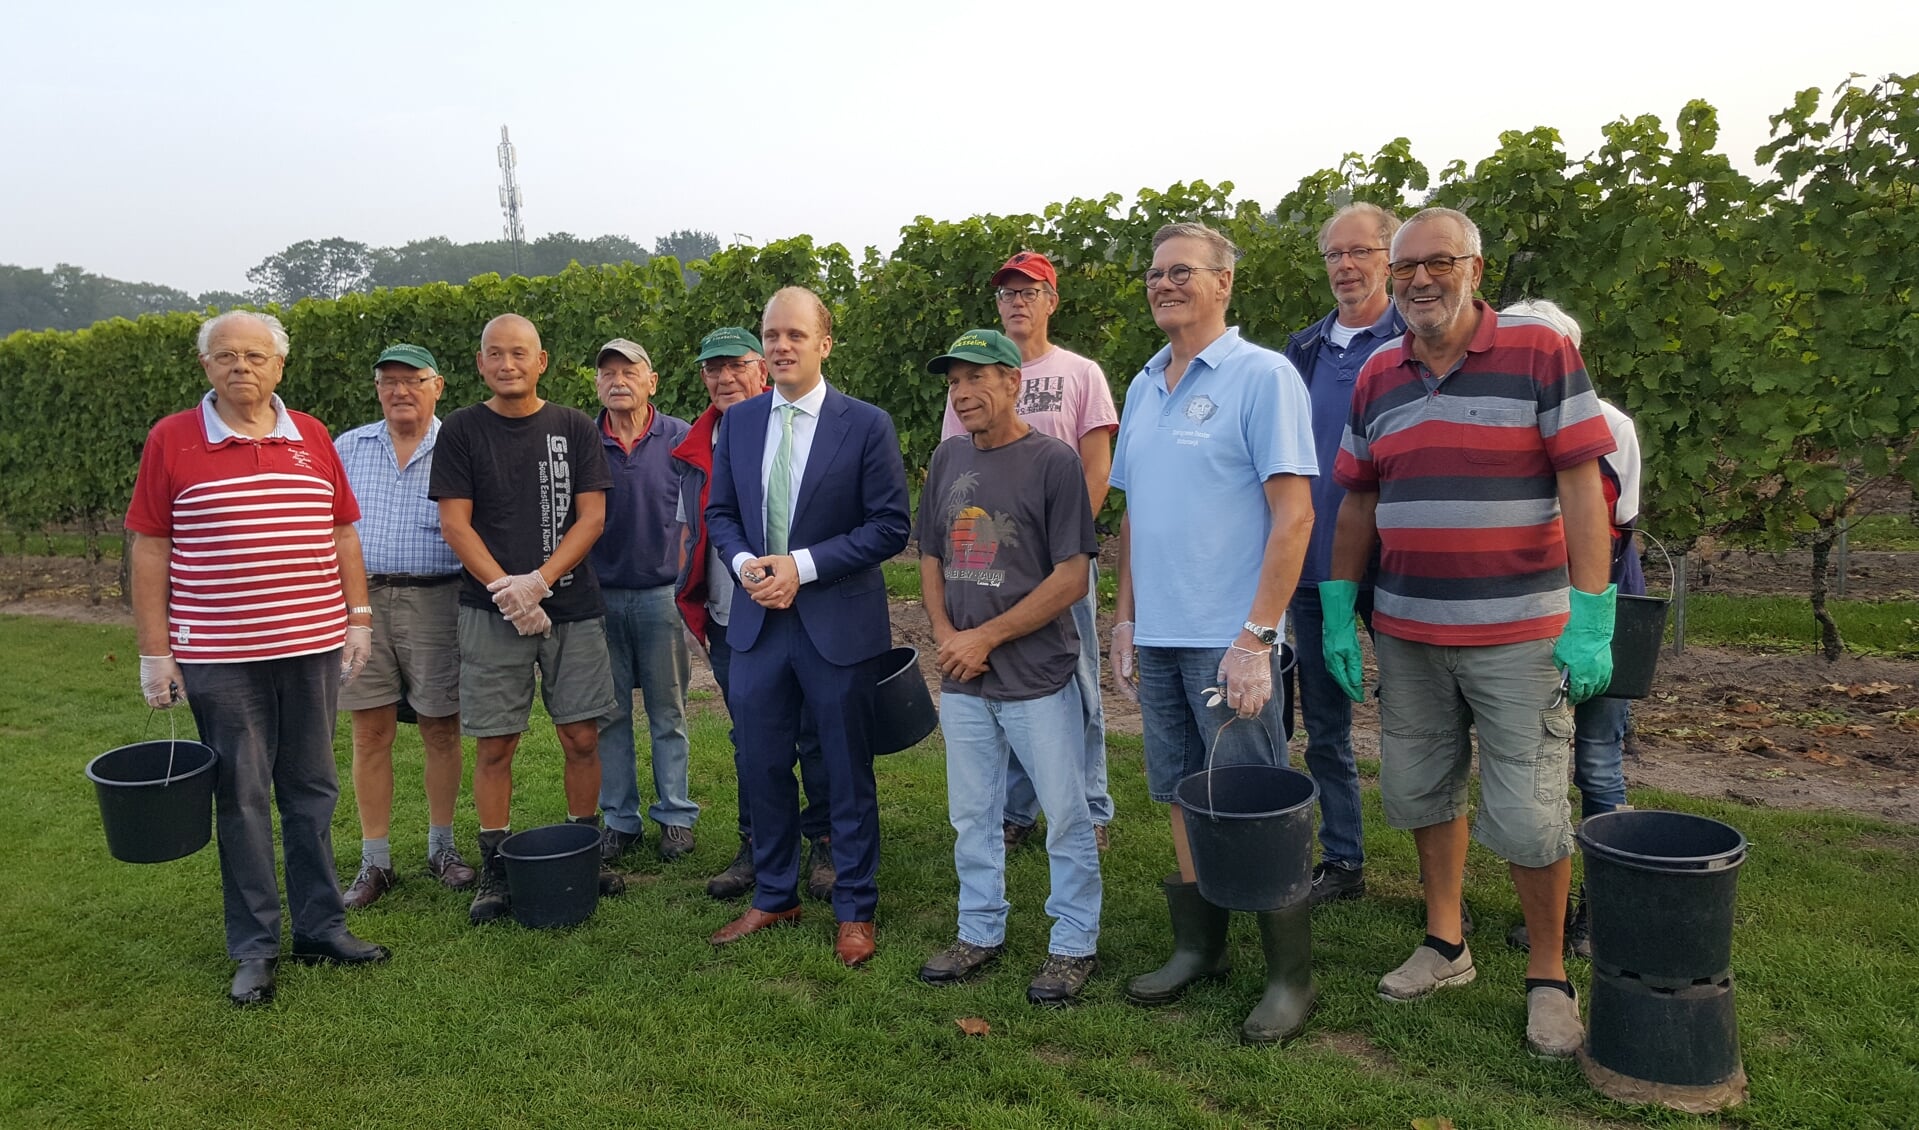 De druivenplukkers van Wijngaard Hesselink met burgemeester Bengevoord. Naast hem Gerhard Ensing. Foto: Wijngaard Hesselink